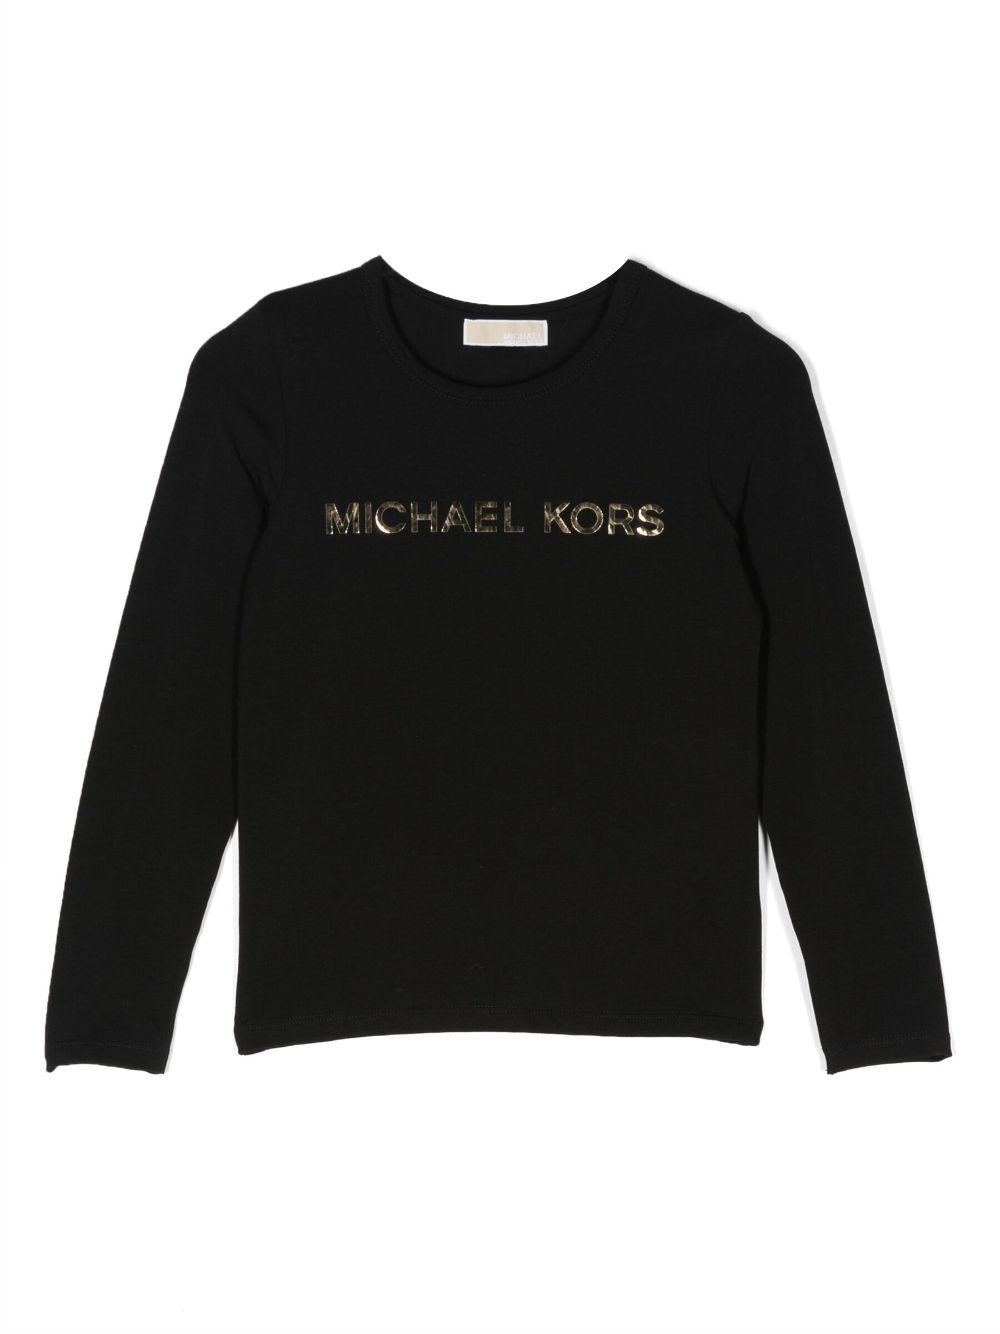 Image 1 of Michael Kors Kids logo-lettering long-sleeved T-shirt